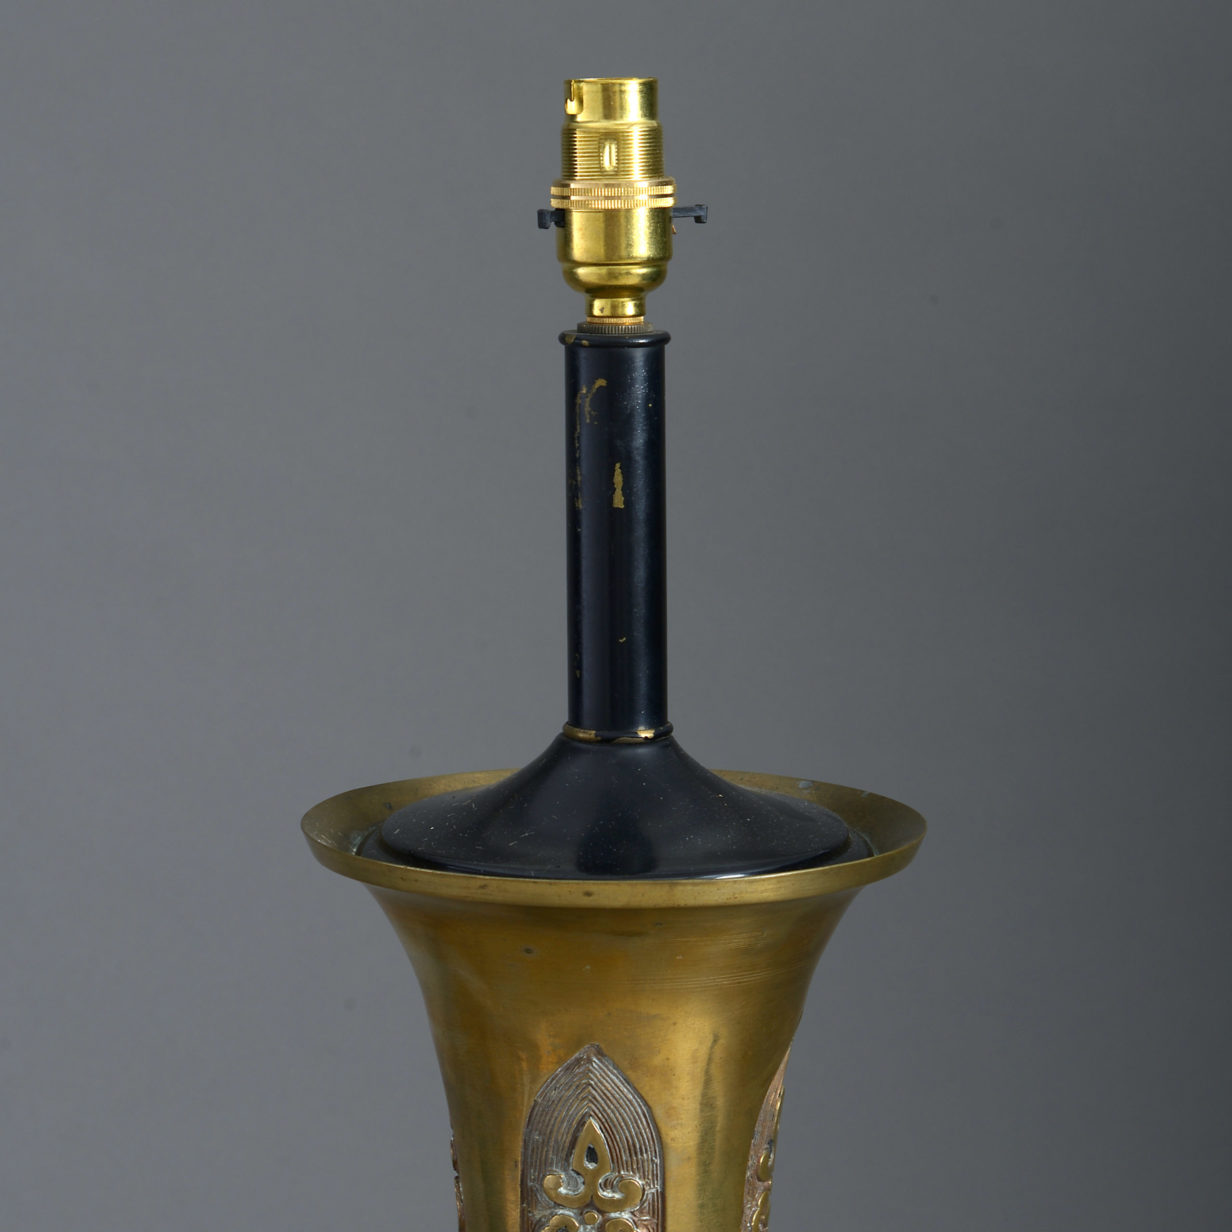 Chinese bronze lamp